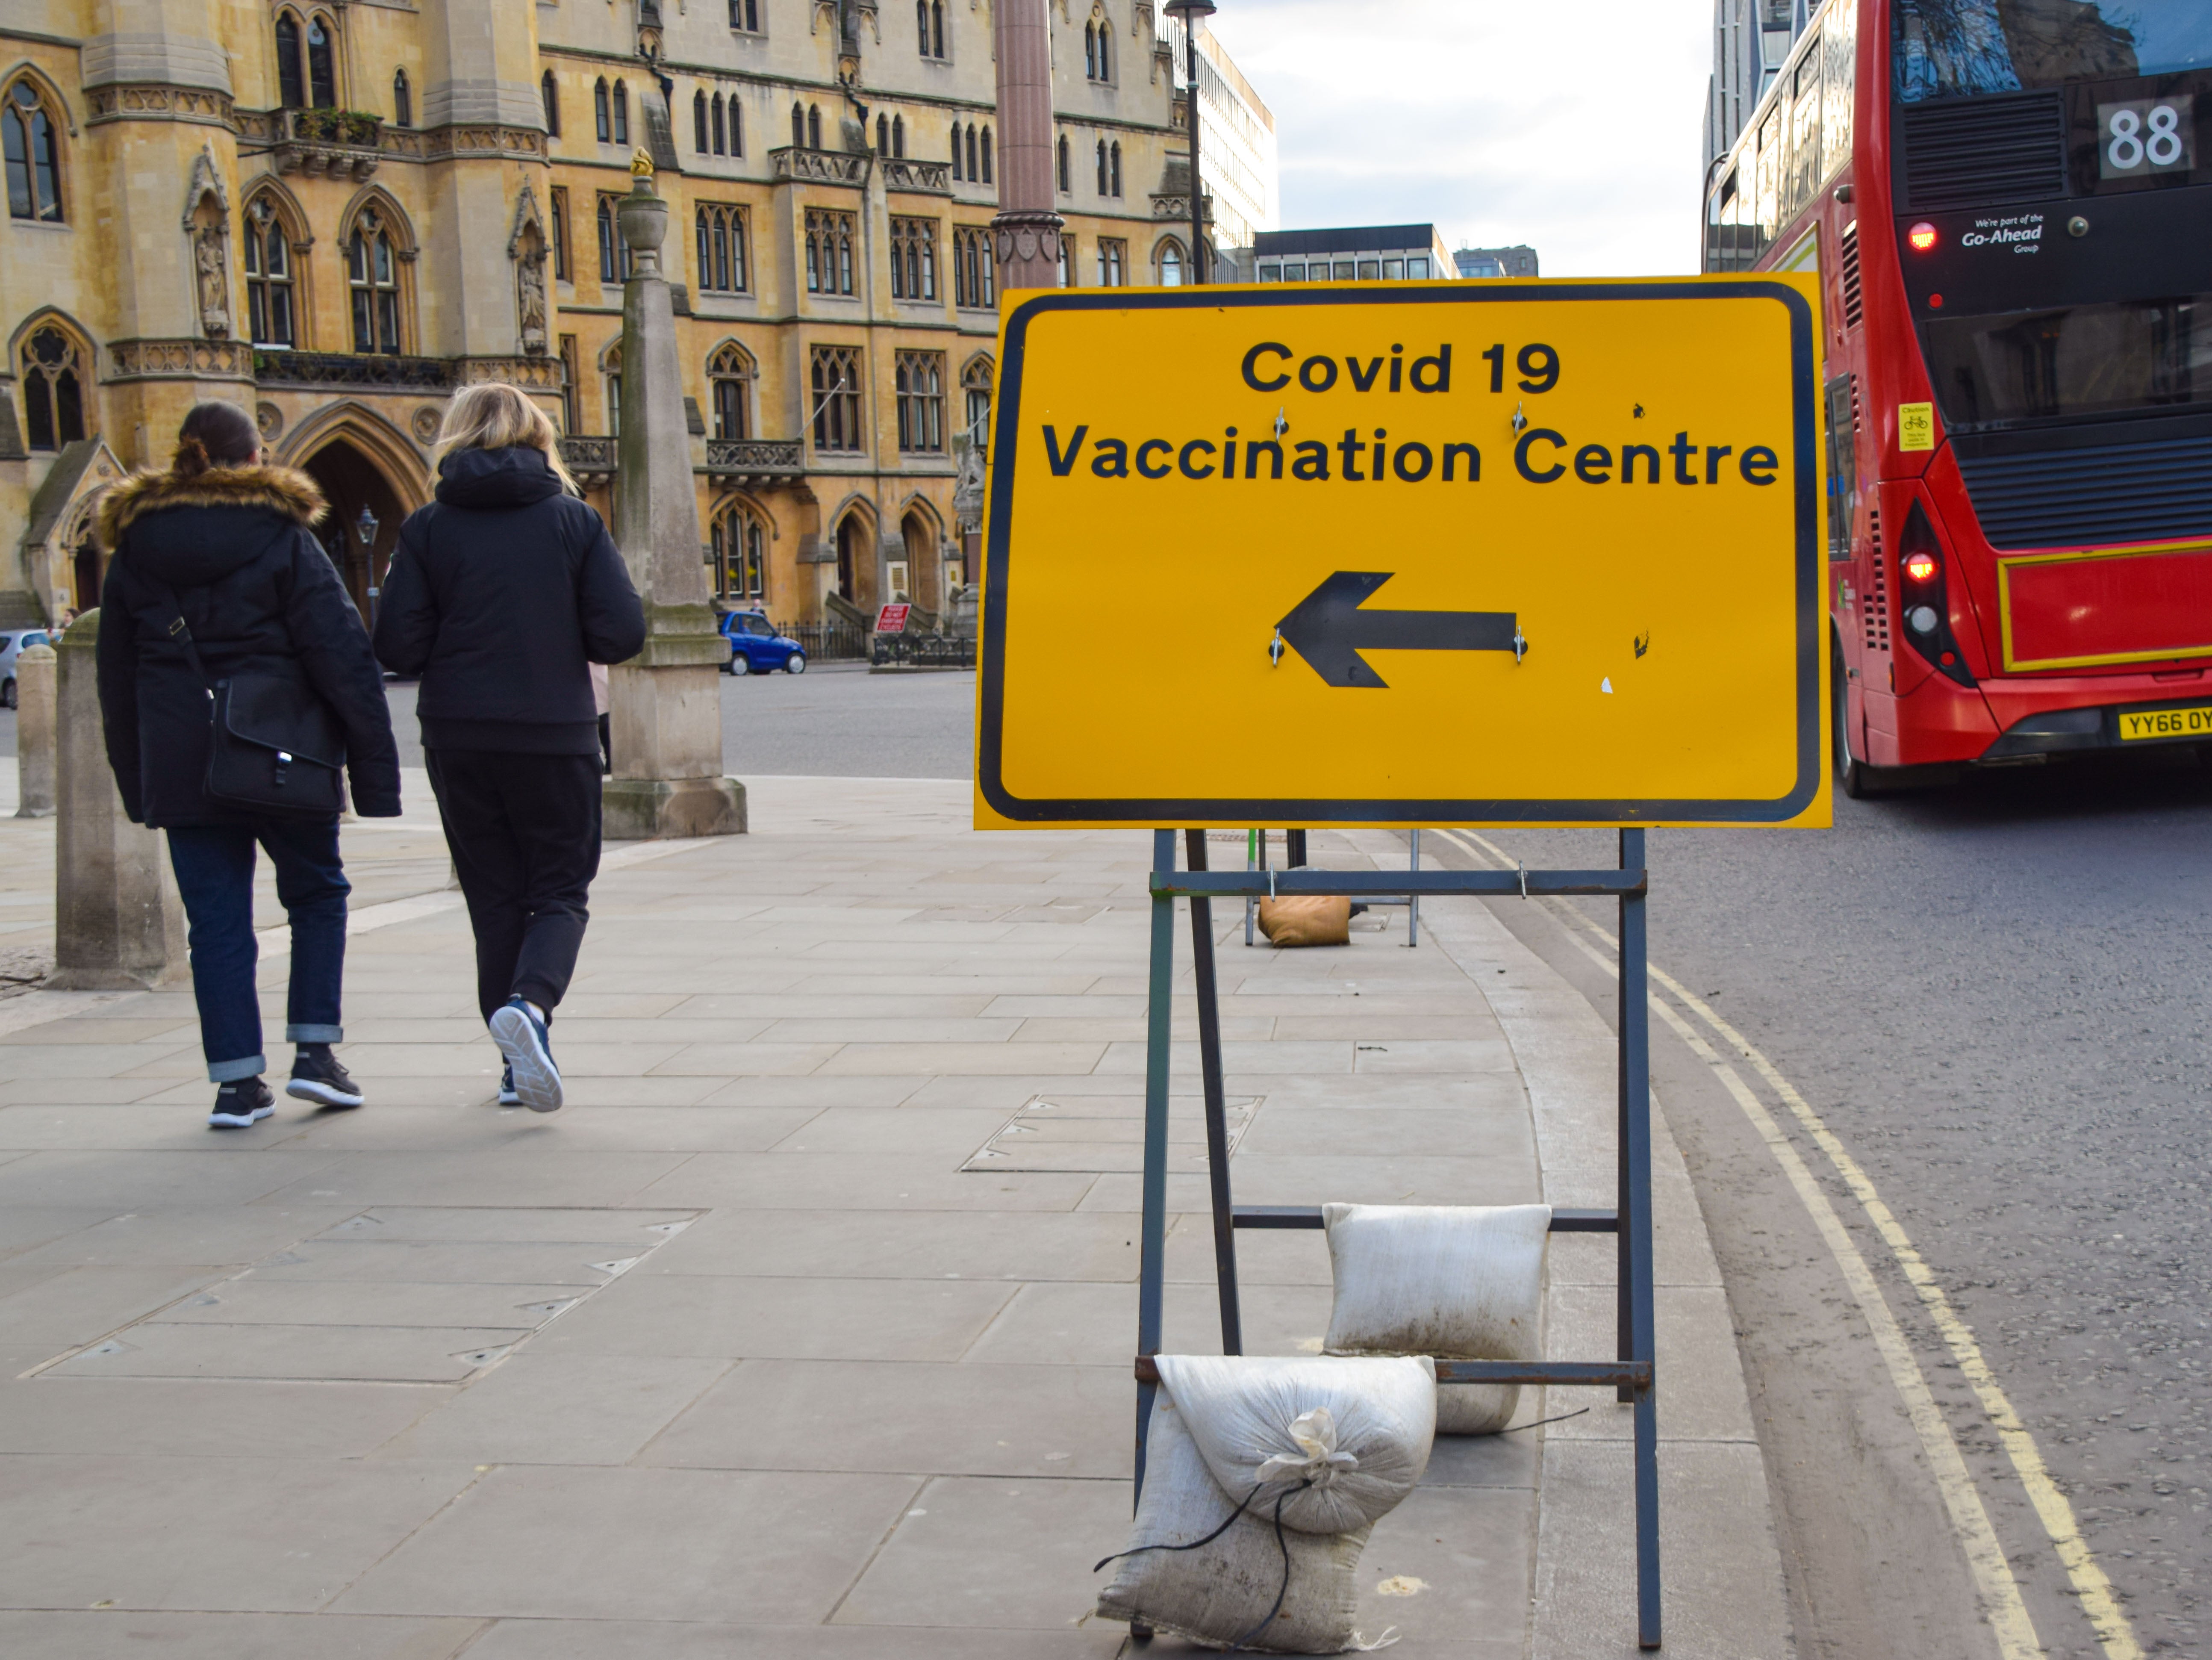 Las personas vacunadas tienen menos probabilidades de contraer covid prolongado que las no vacunadas, descubrió la Agencia de Seguridad Sanitaria del Reino Unido